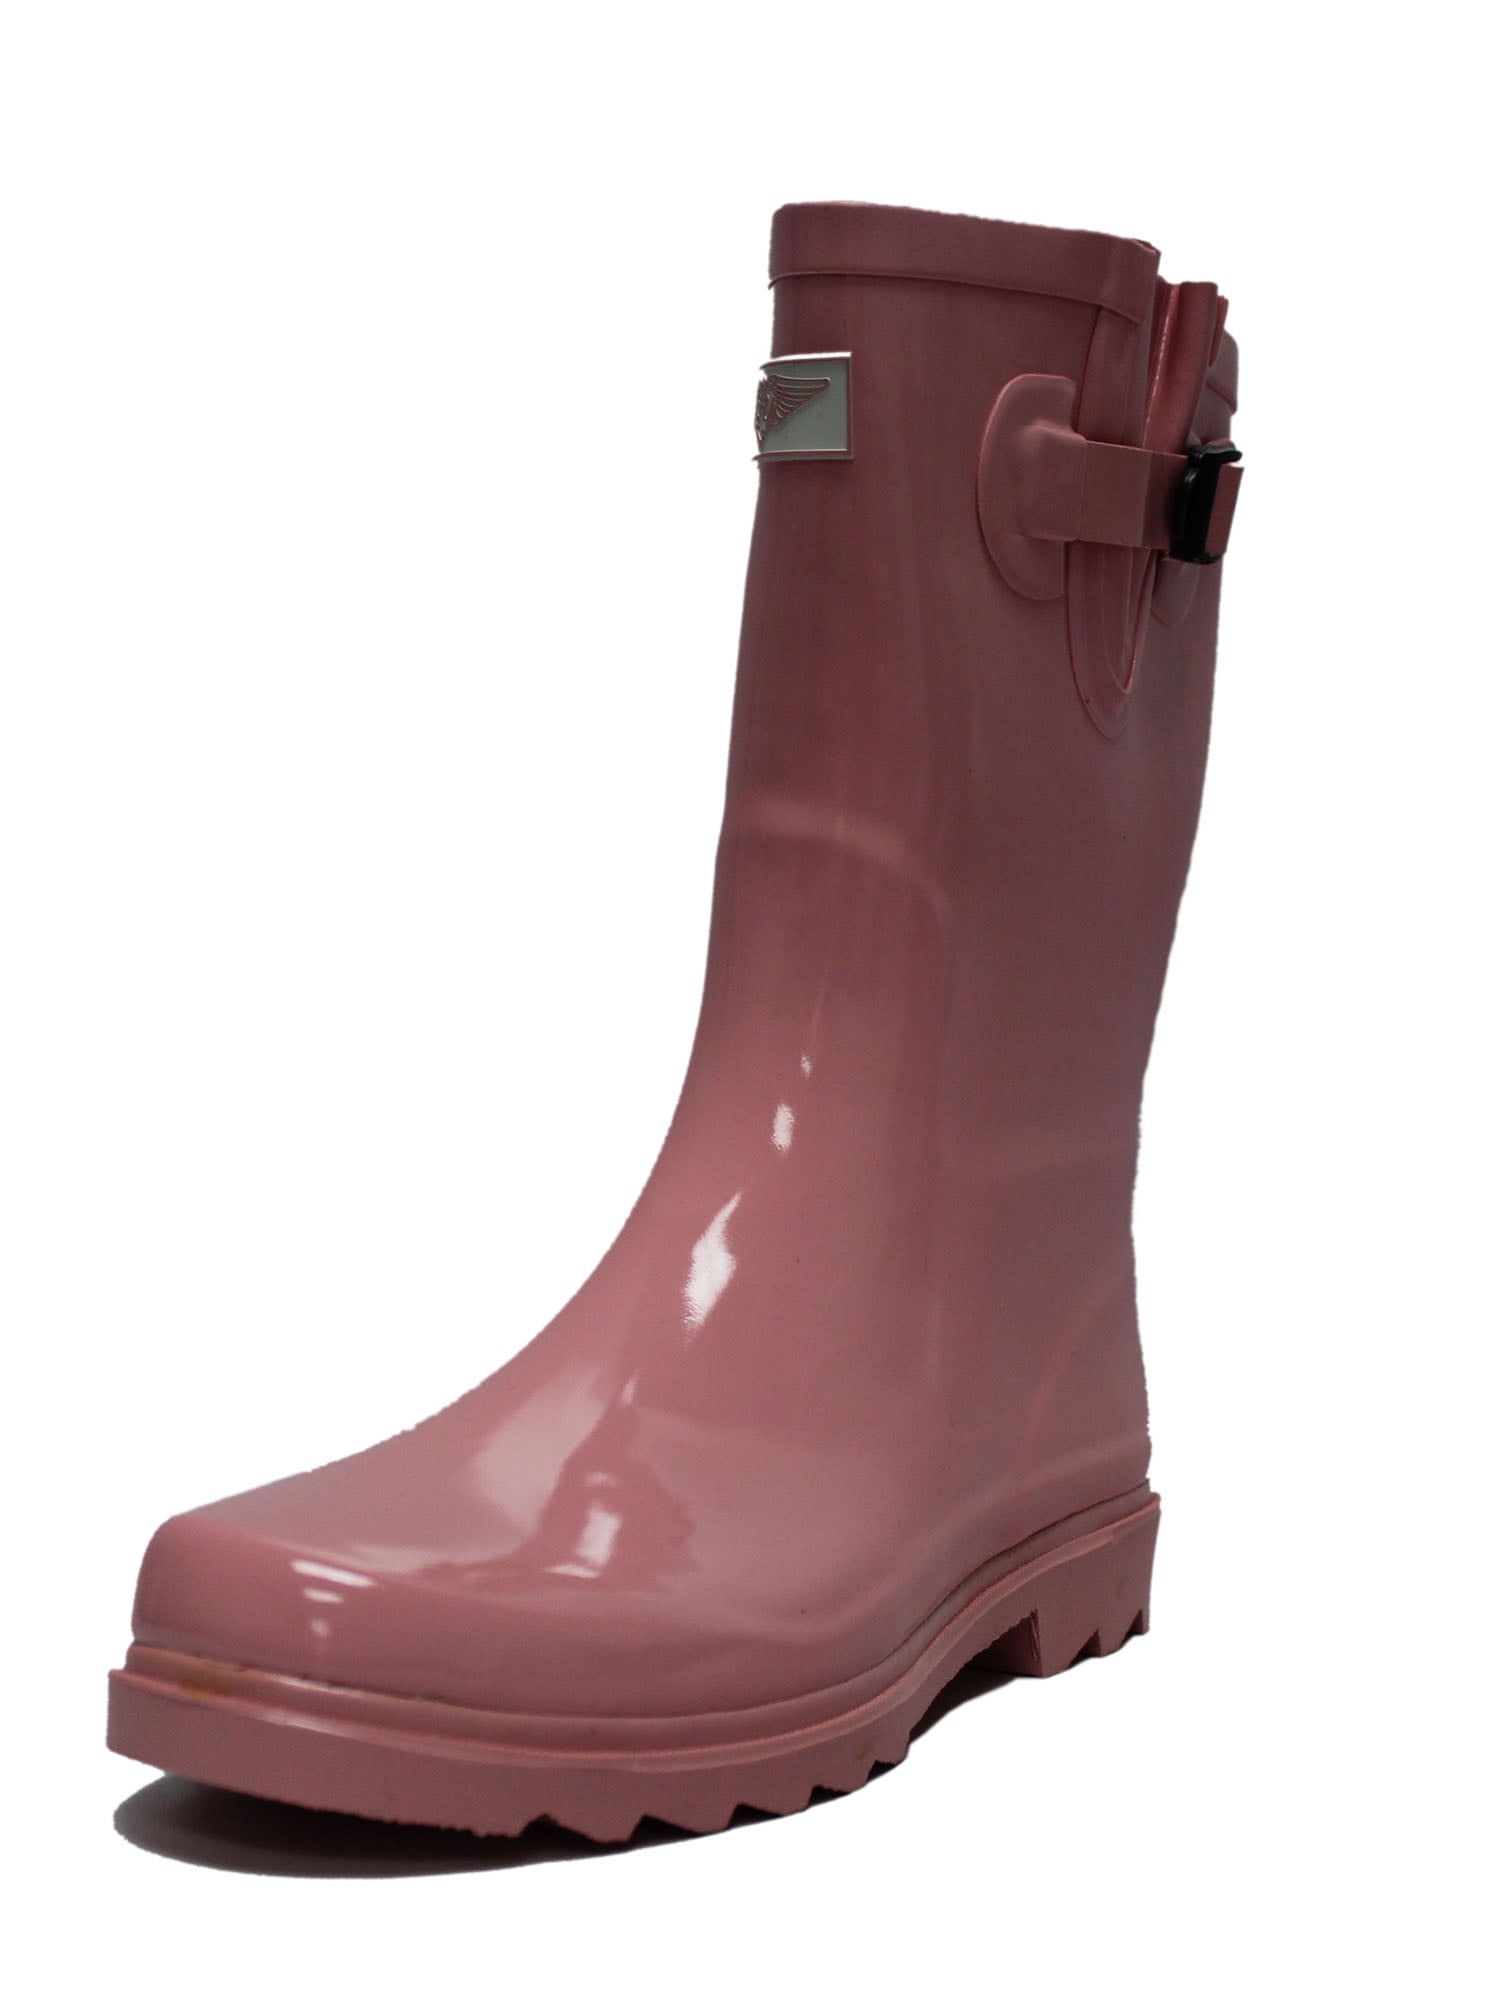 slip on rain boots